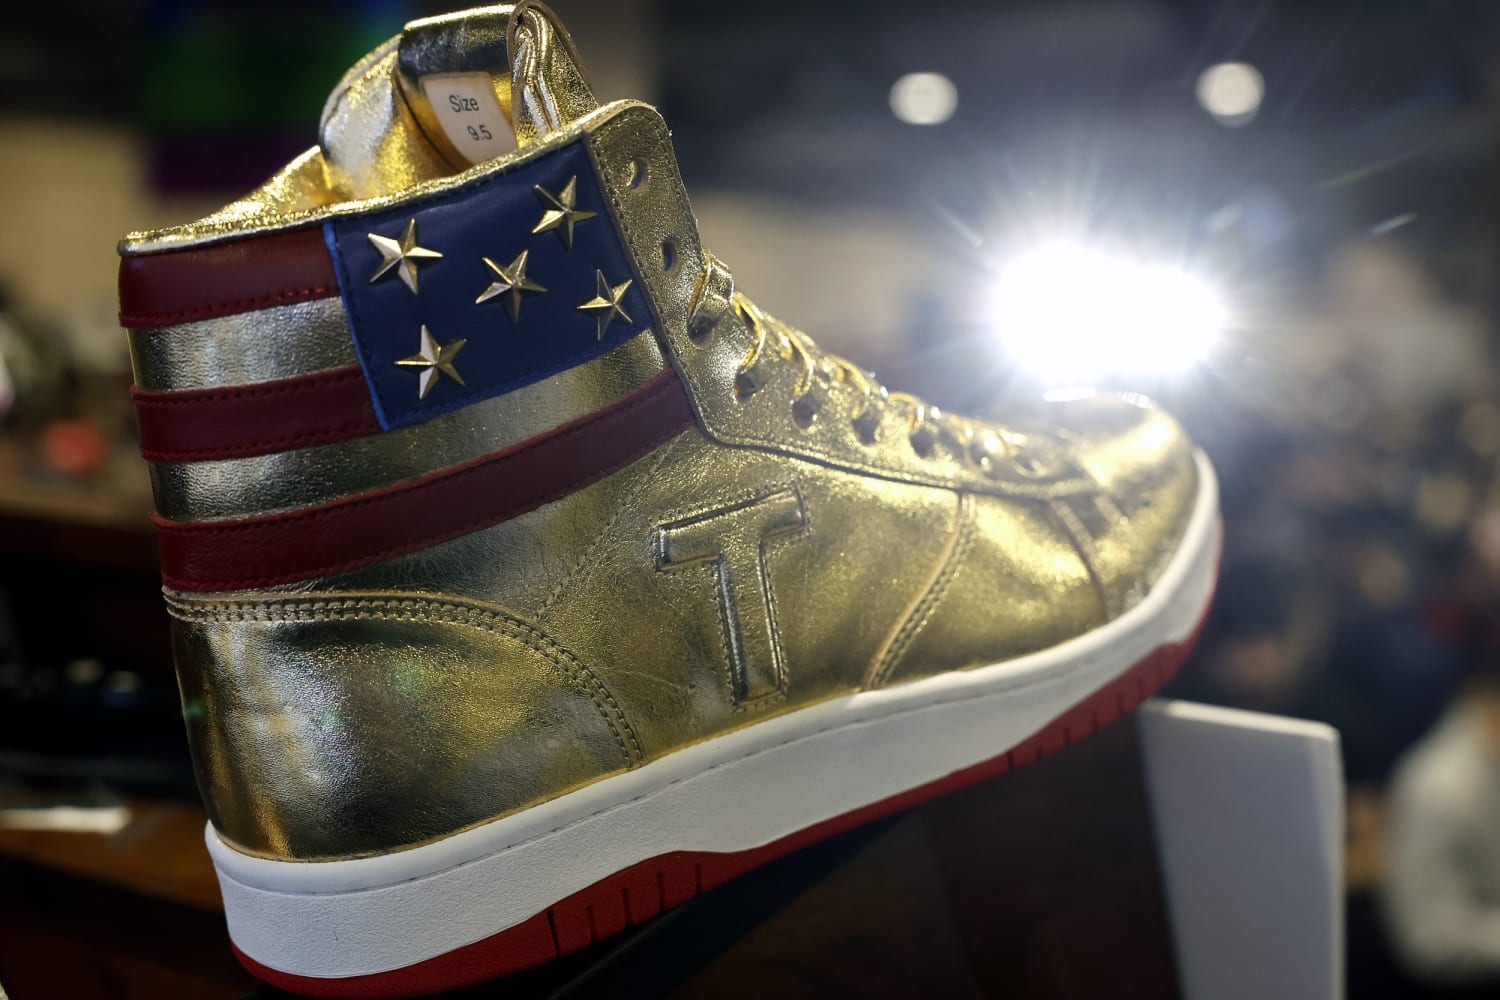 Donald Trump lanza su propia línea de sneakers edición limitada